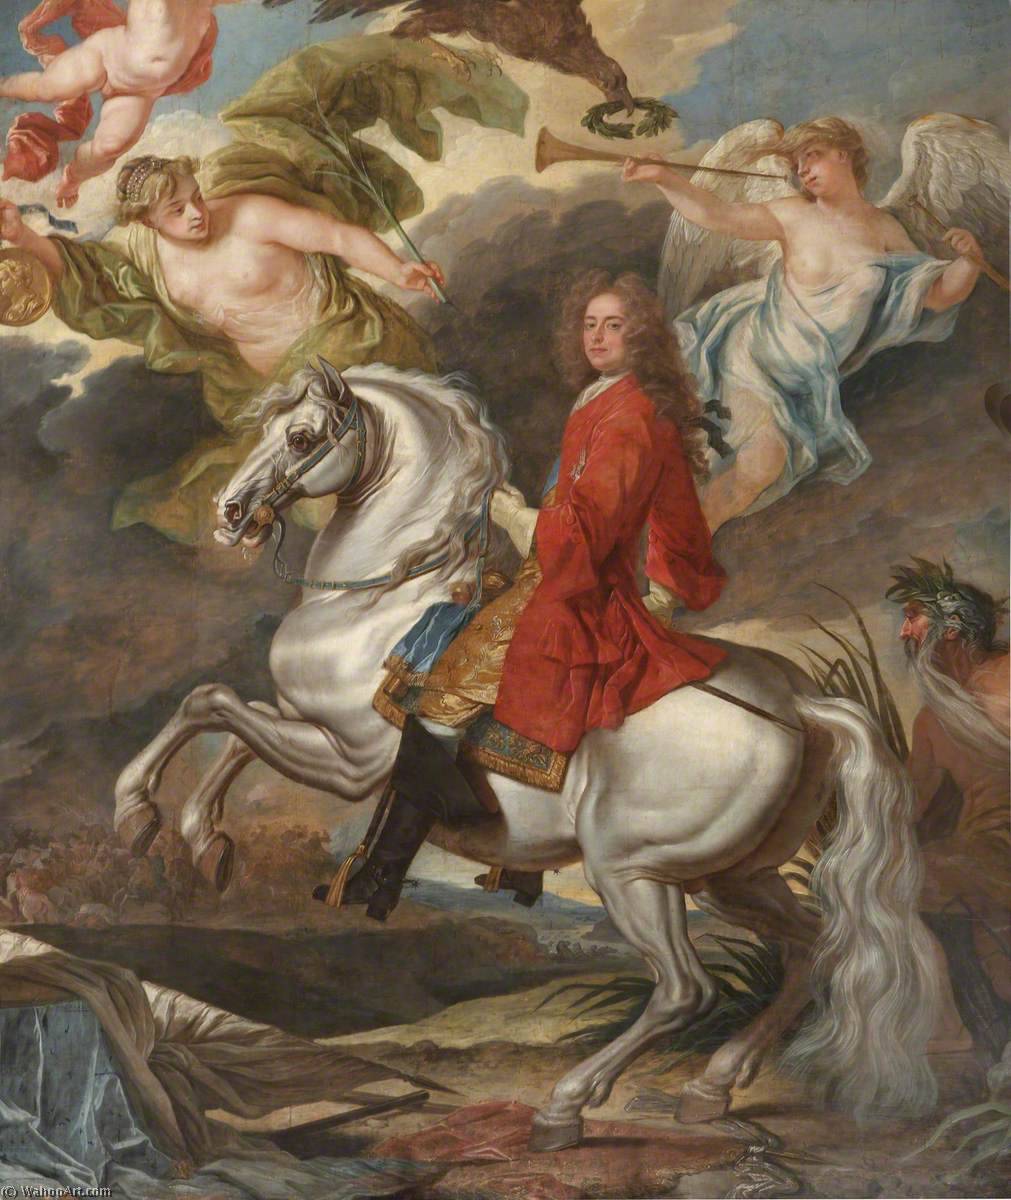 Buy Museum Art Reproductions The Triumph of John, 1st Duke of Marlborough by John Closterman | ArtsDot.com